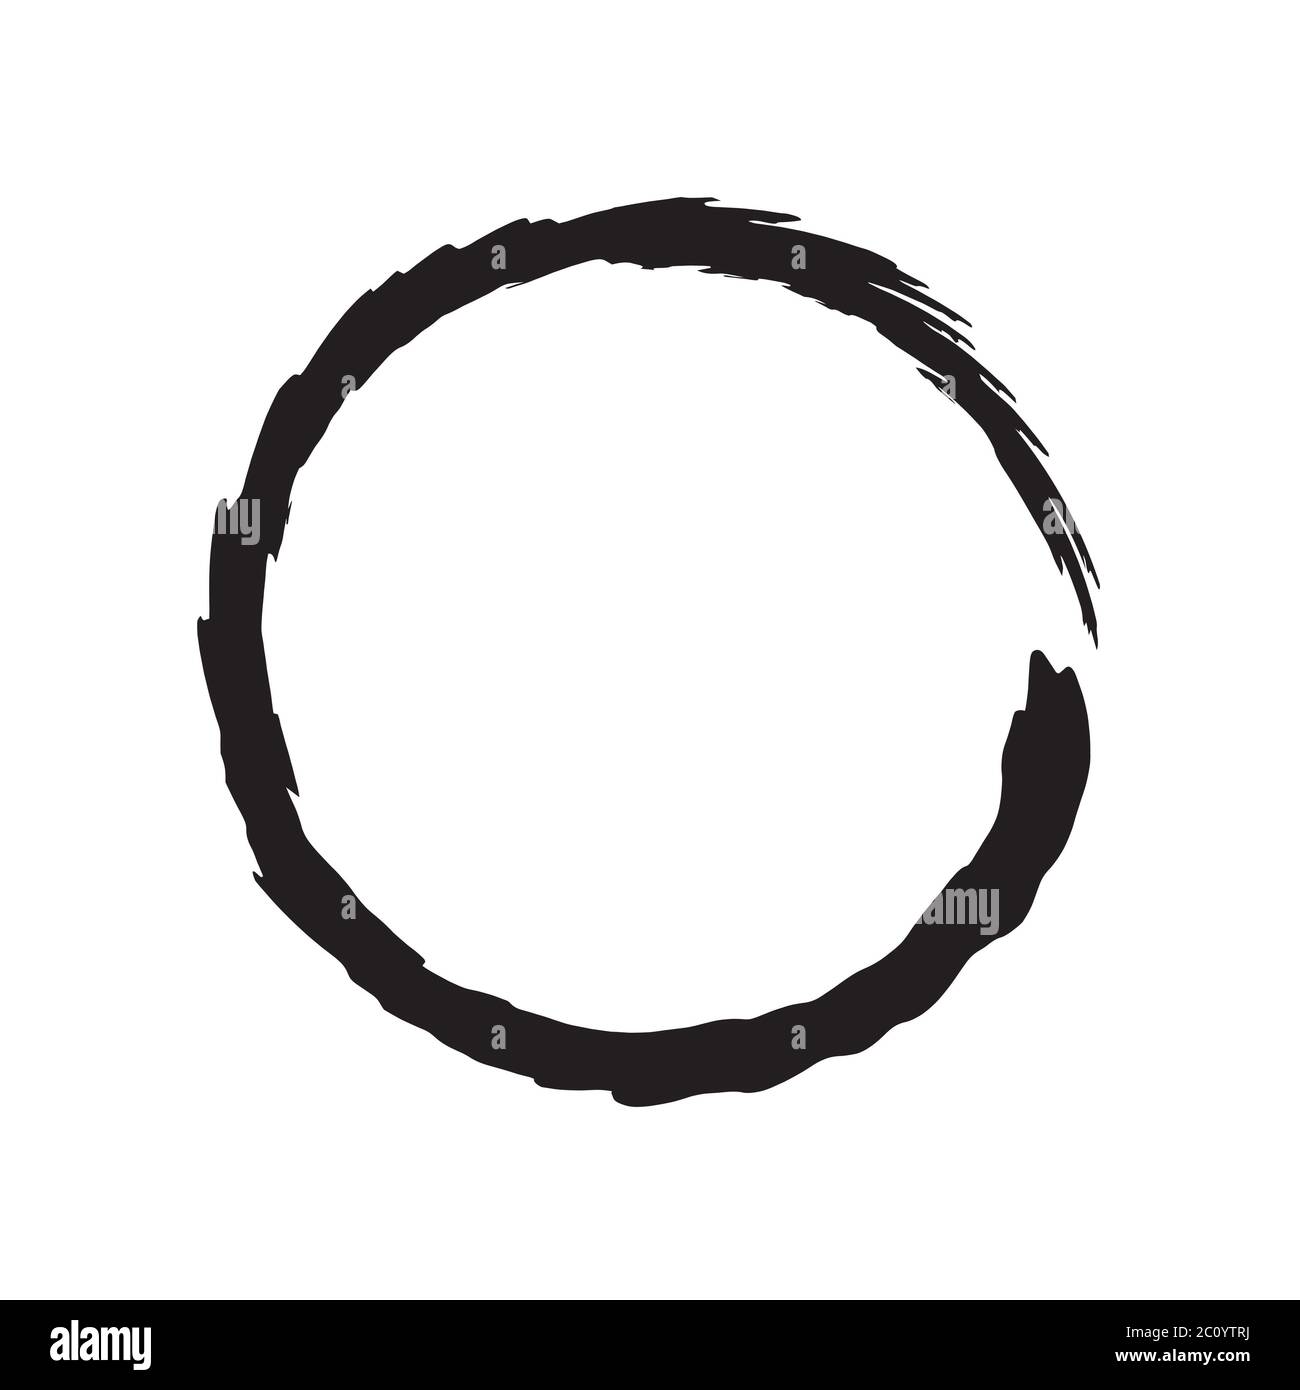 circle shape vector black grunge background Stock Photo